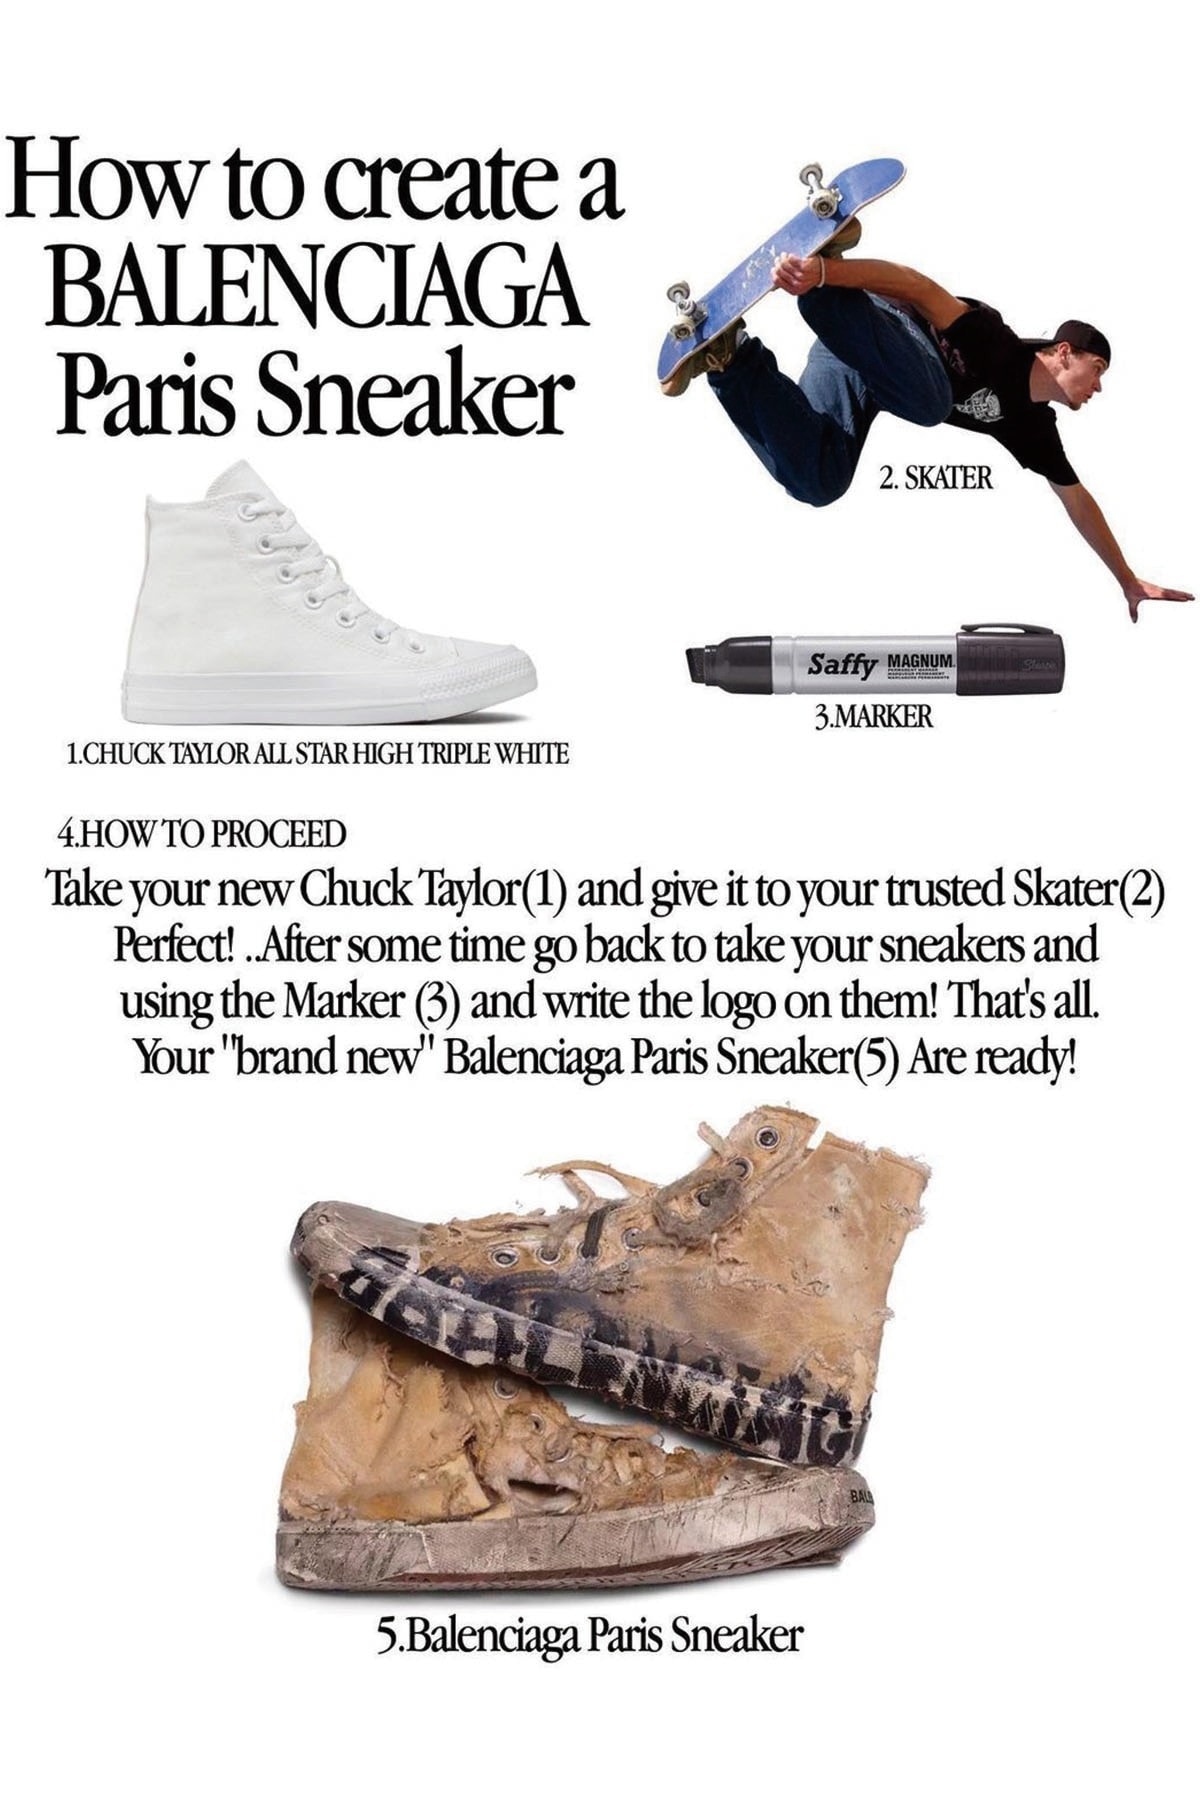 如何自制 Balenciaga 要價 $1,850 美元的破舊風格鞋款「Paris Sneaker」